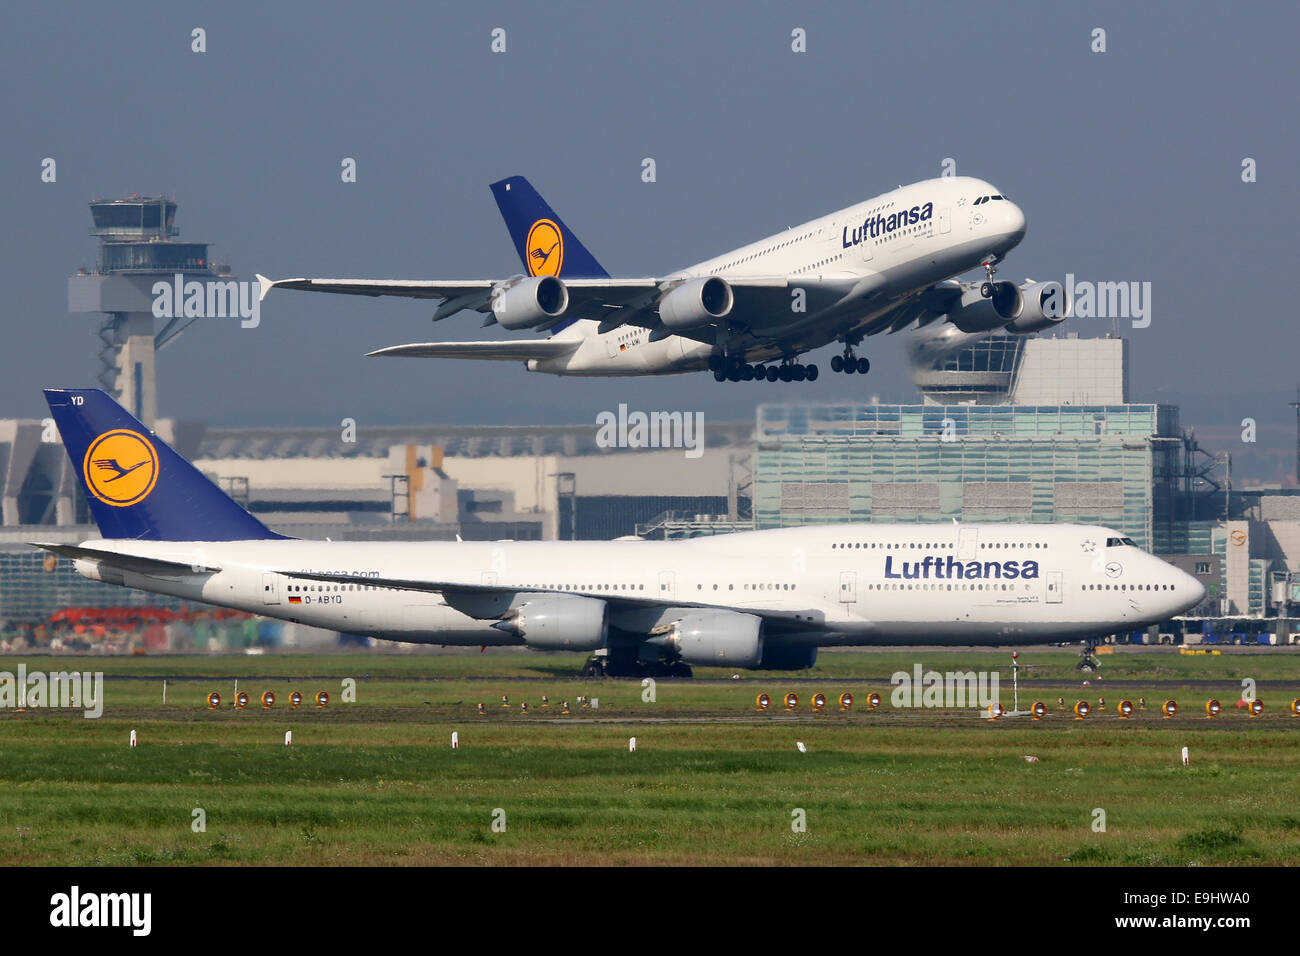 Francfort, Allemagne - le 17 septembre 2014 : Lufthansa Airbus A380 et Boeing 747 à l'aéroport de Francfort (FRA). Lufthansa est Banque D'Images